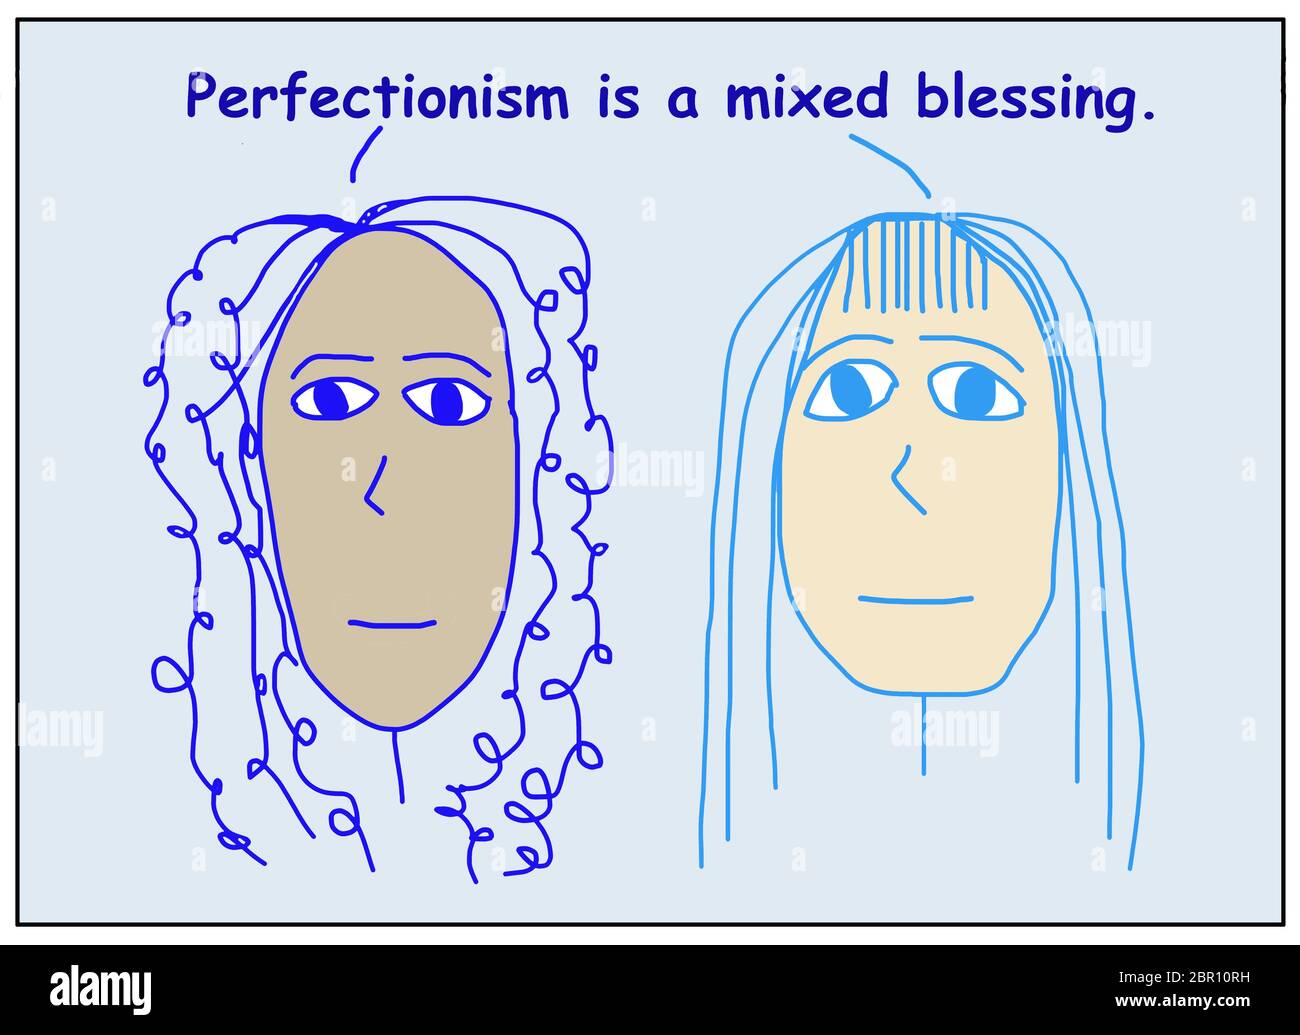 Farbzeichentrick von zwei ethnisch unterschiedlichen Frauen besagt, dass Perfektionismus ist ein gemischter Segen. Stockfoto